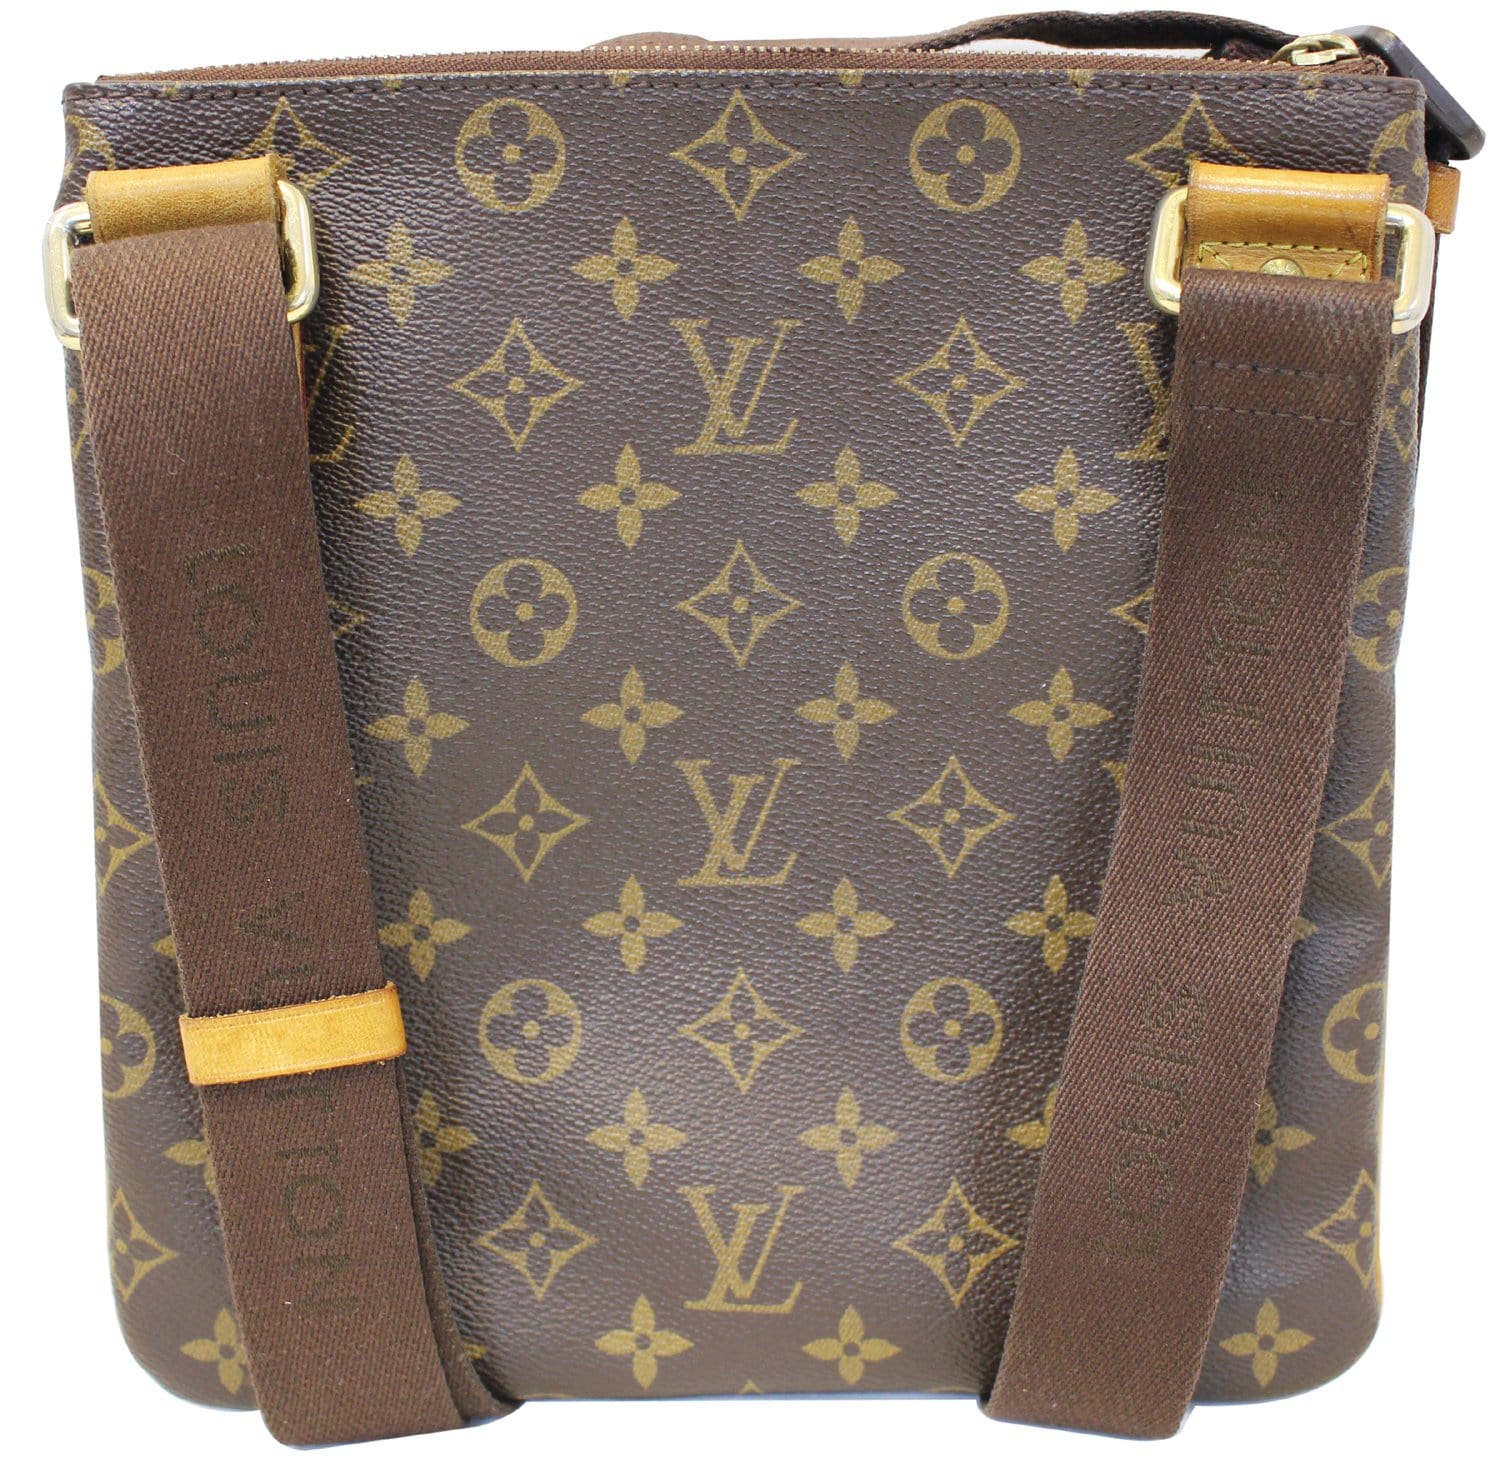 Louis Vuitton Louis Vuitton Valmy MM Monogram Canvas Messenger Bag